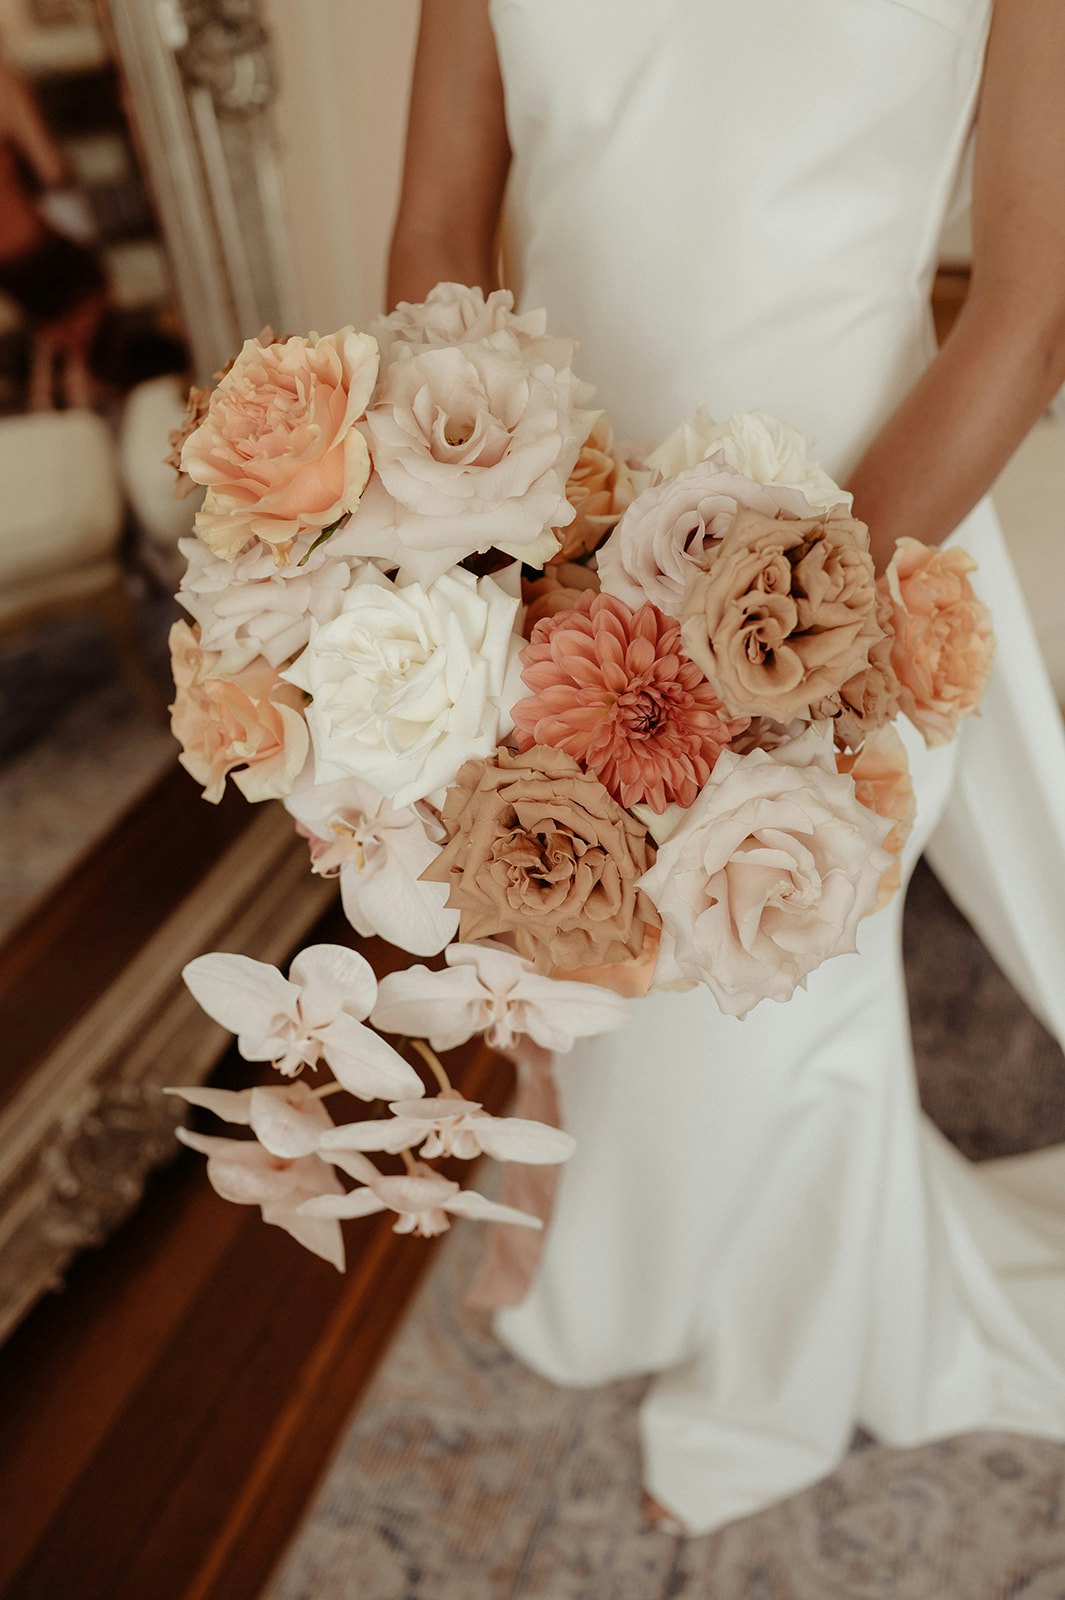 Brides wedding bouquet